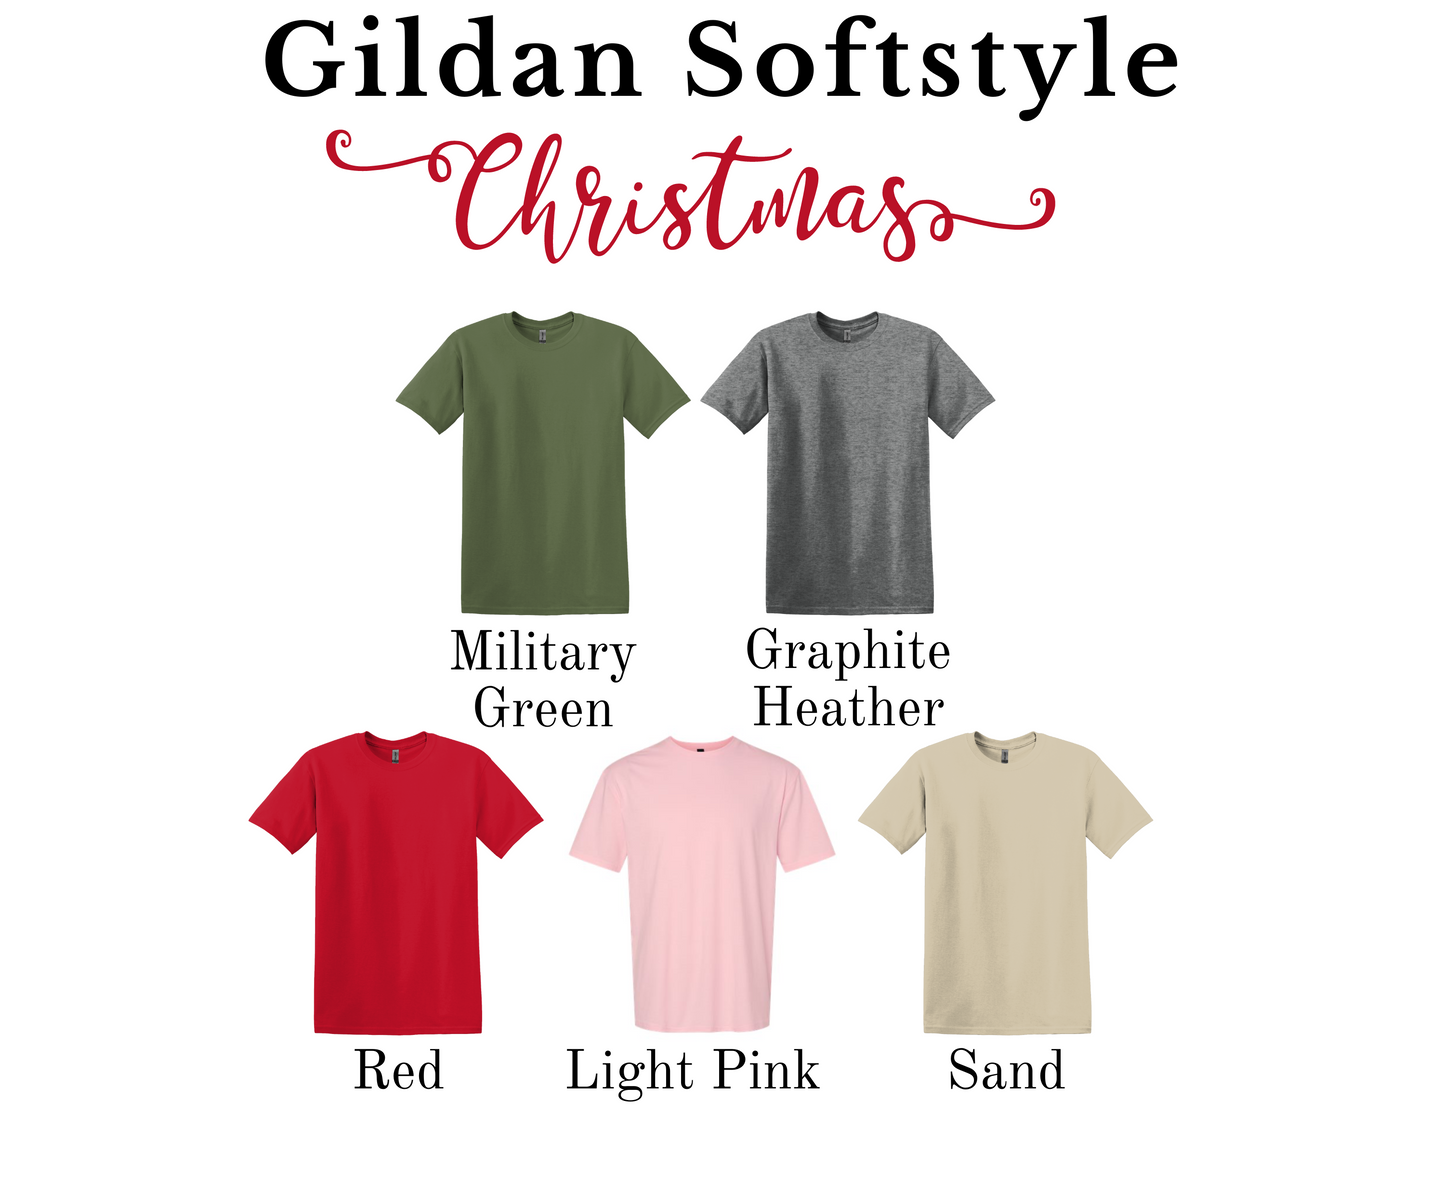 Vintage Christmas and CO Gildan Softstyle T-shirt